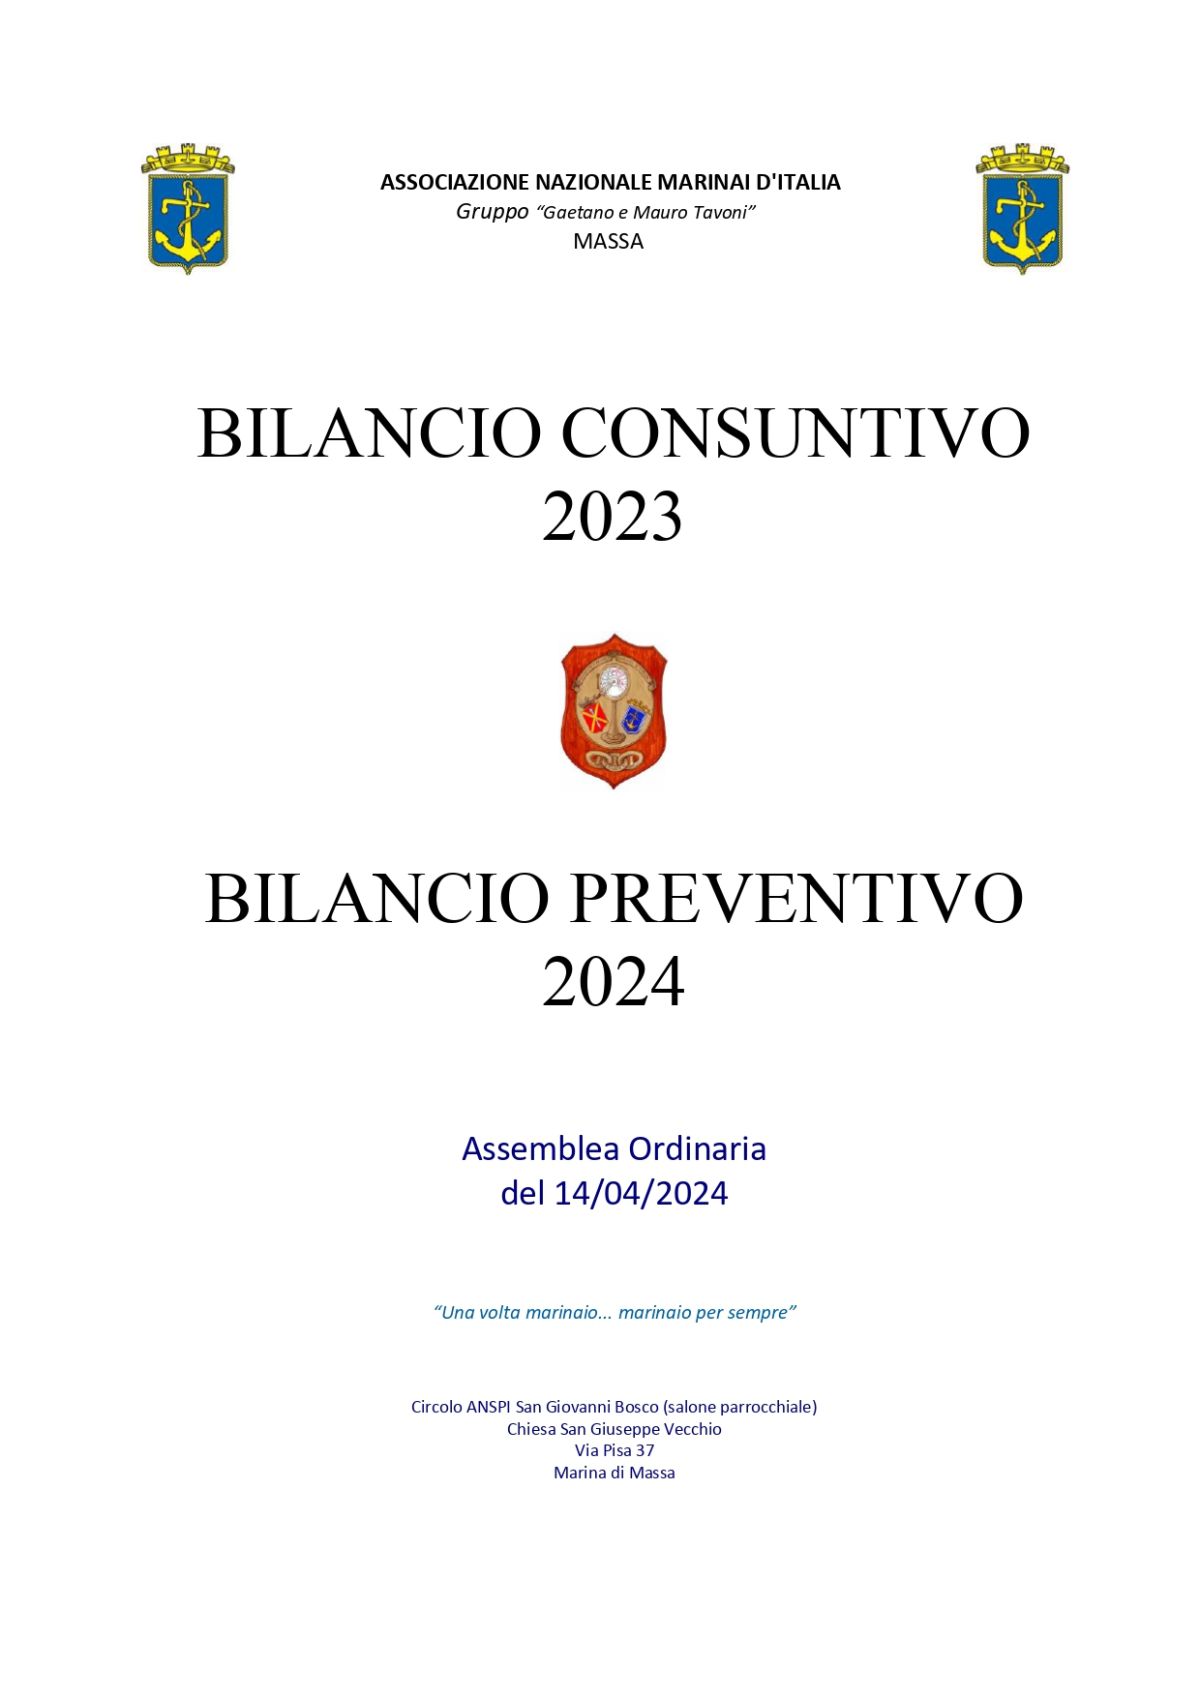 Assemblea ordinaria per la presentazione e l'approvazione del Bilancio Consuntivo 2023 e Bilancio Preventivo 2024 - A.N.M.I. Massa